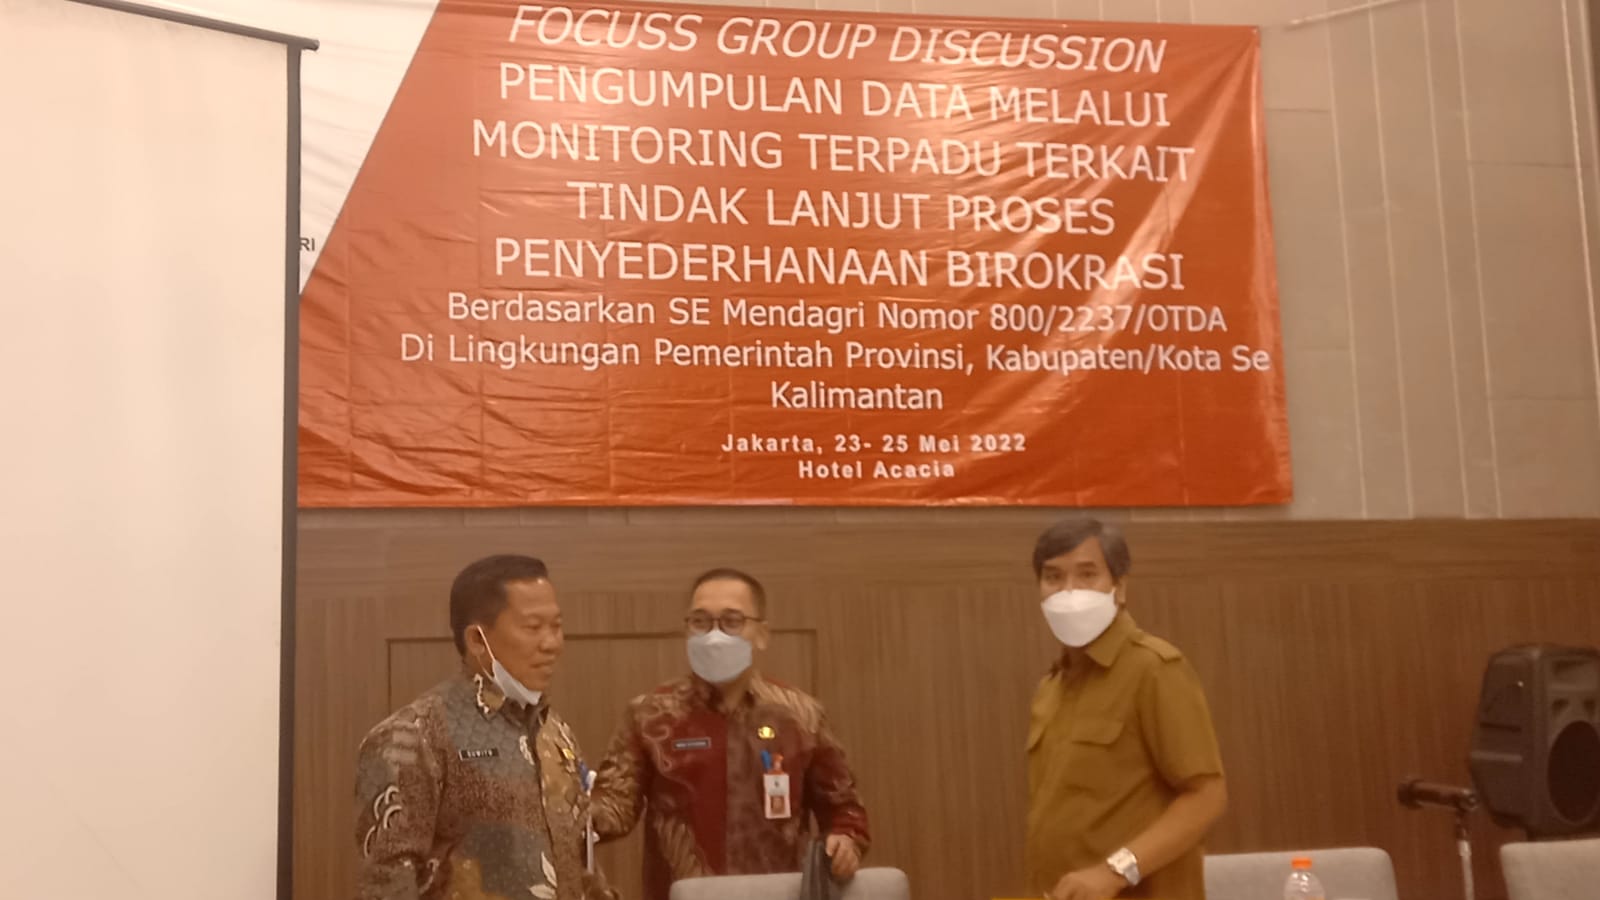 Kepala BKPSDM Hadiri FGD di Jakarta